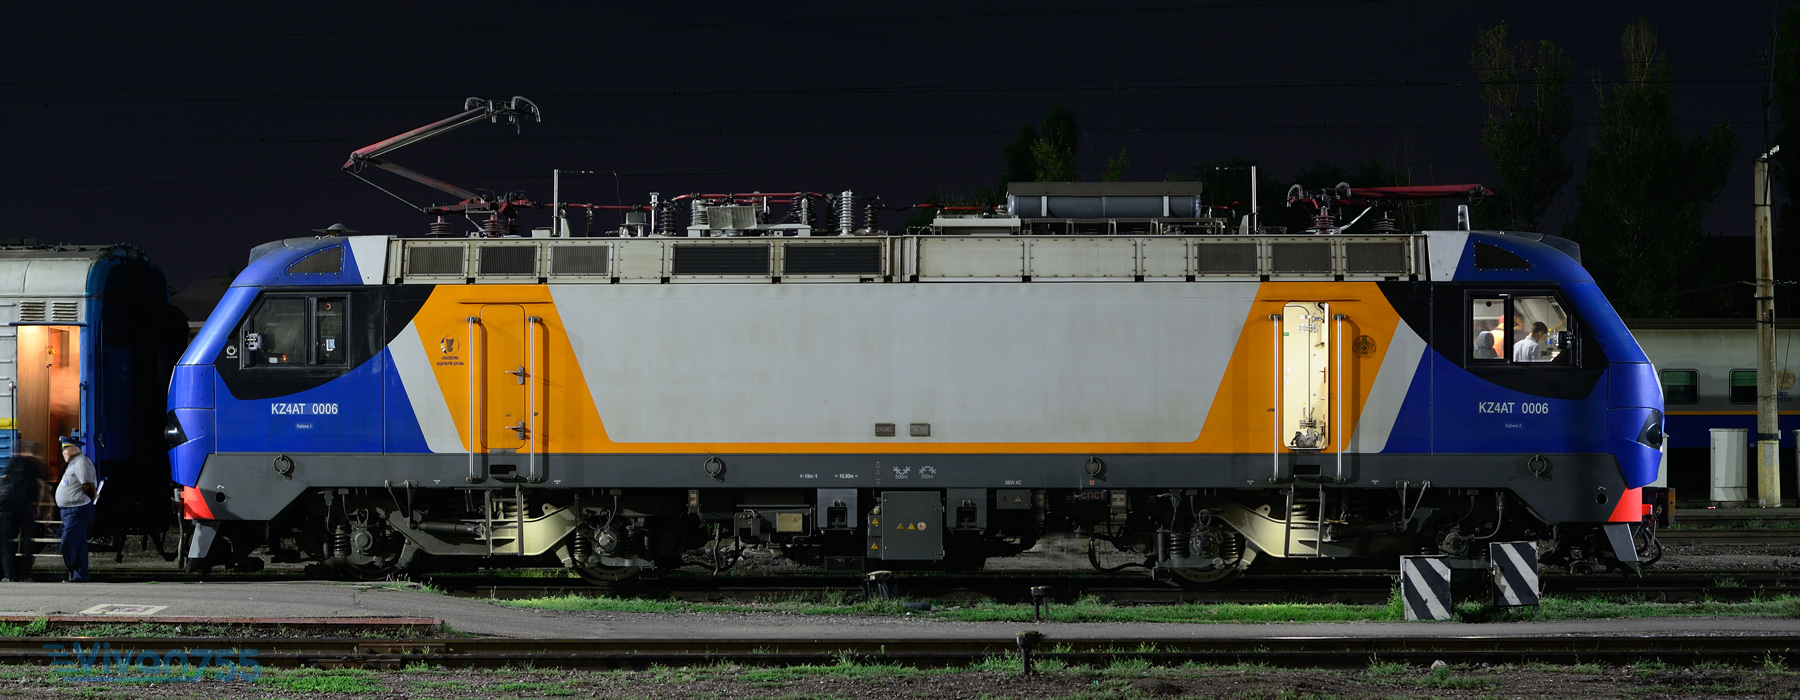 KZ4AT-0006